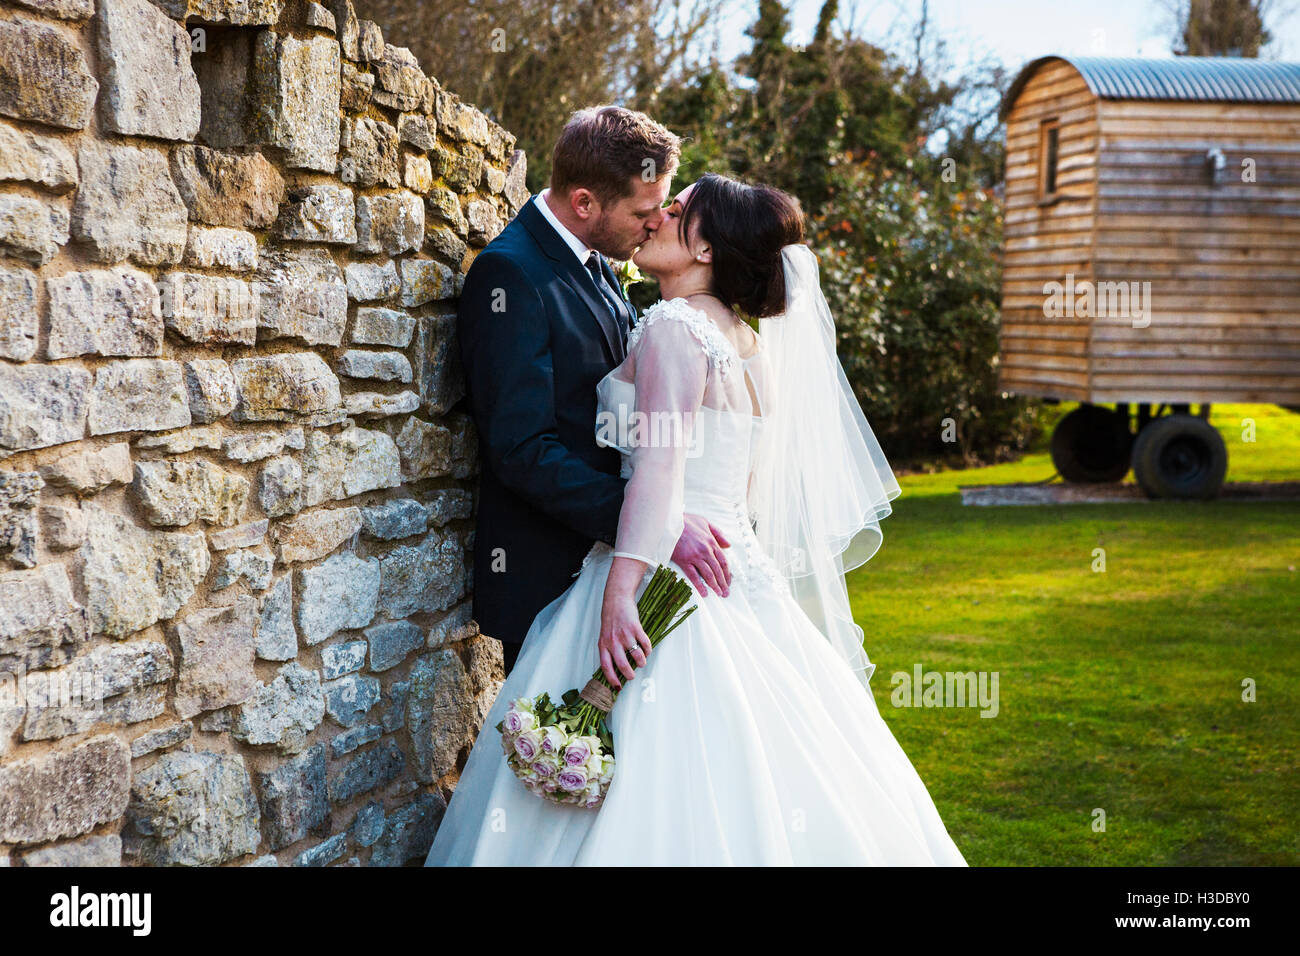 La novia y el novio besarse en su día de la boda de pie en un jardín. Foto de stock